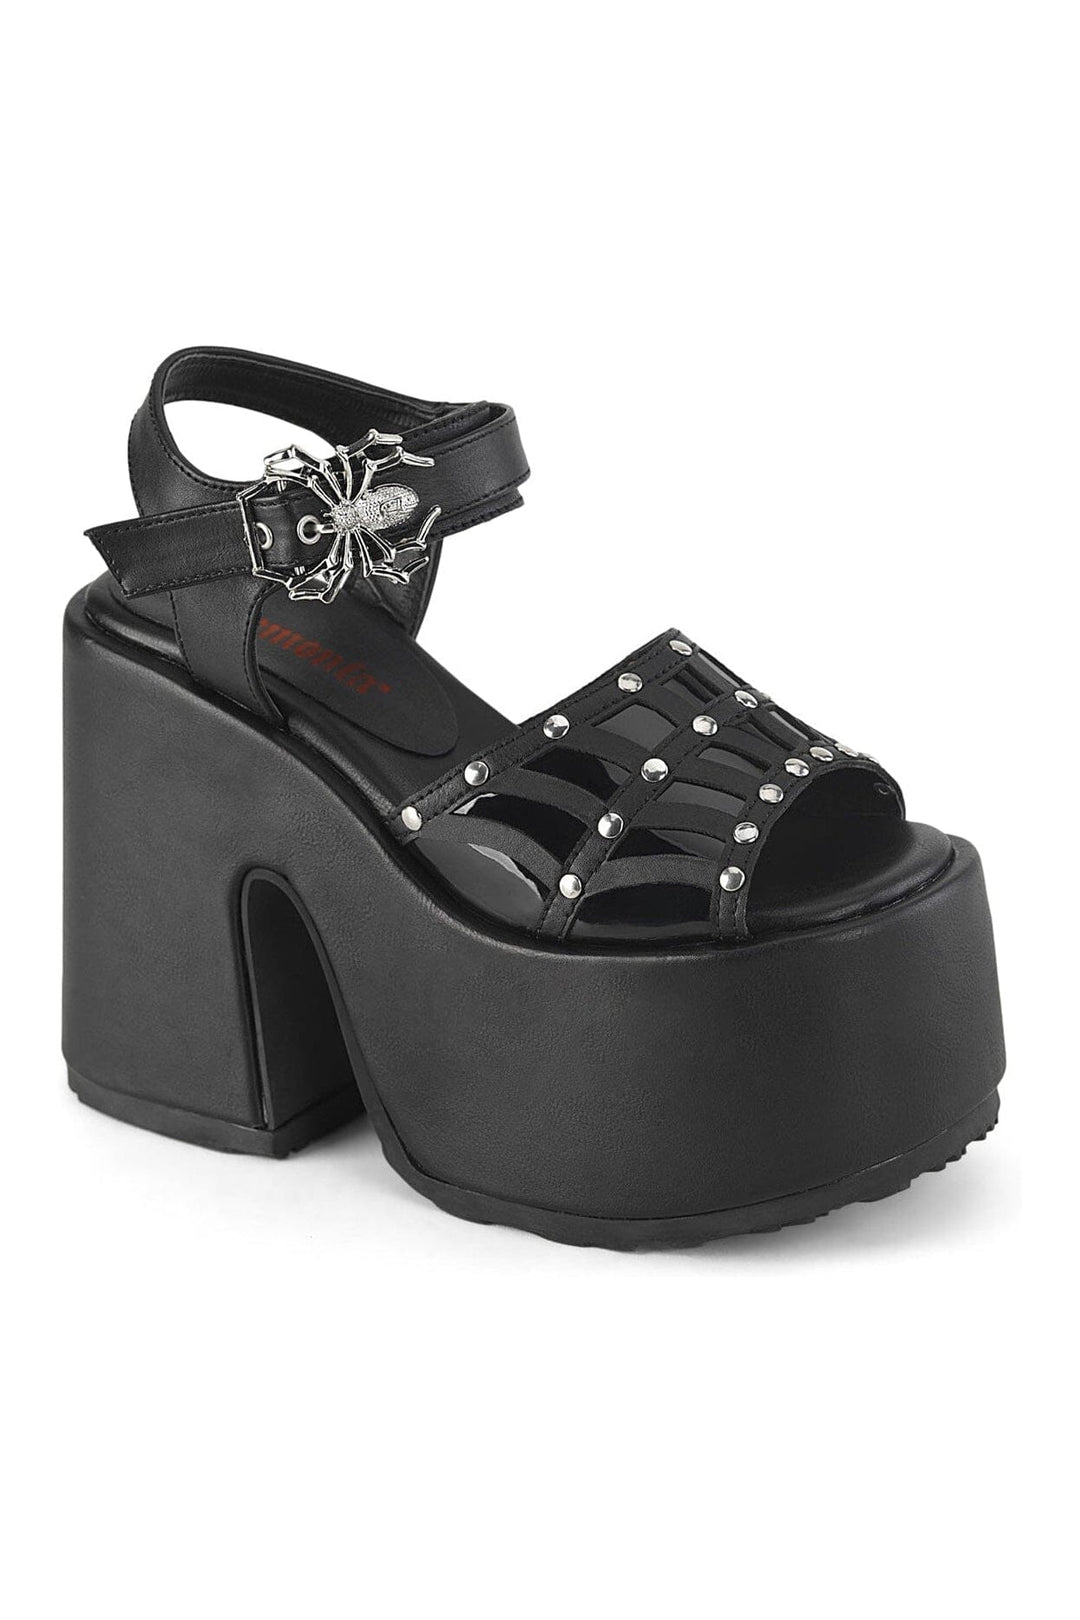 CAMEL-17 Black Vegan Leather Sandal-Sandals-Demonia-Black-10-Vegan Leather-SEXYSHOES.COM